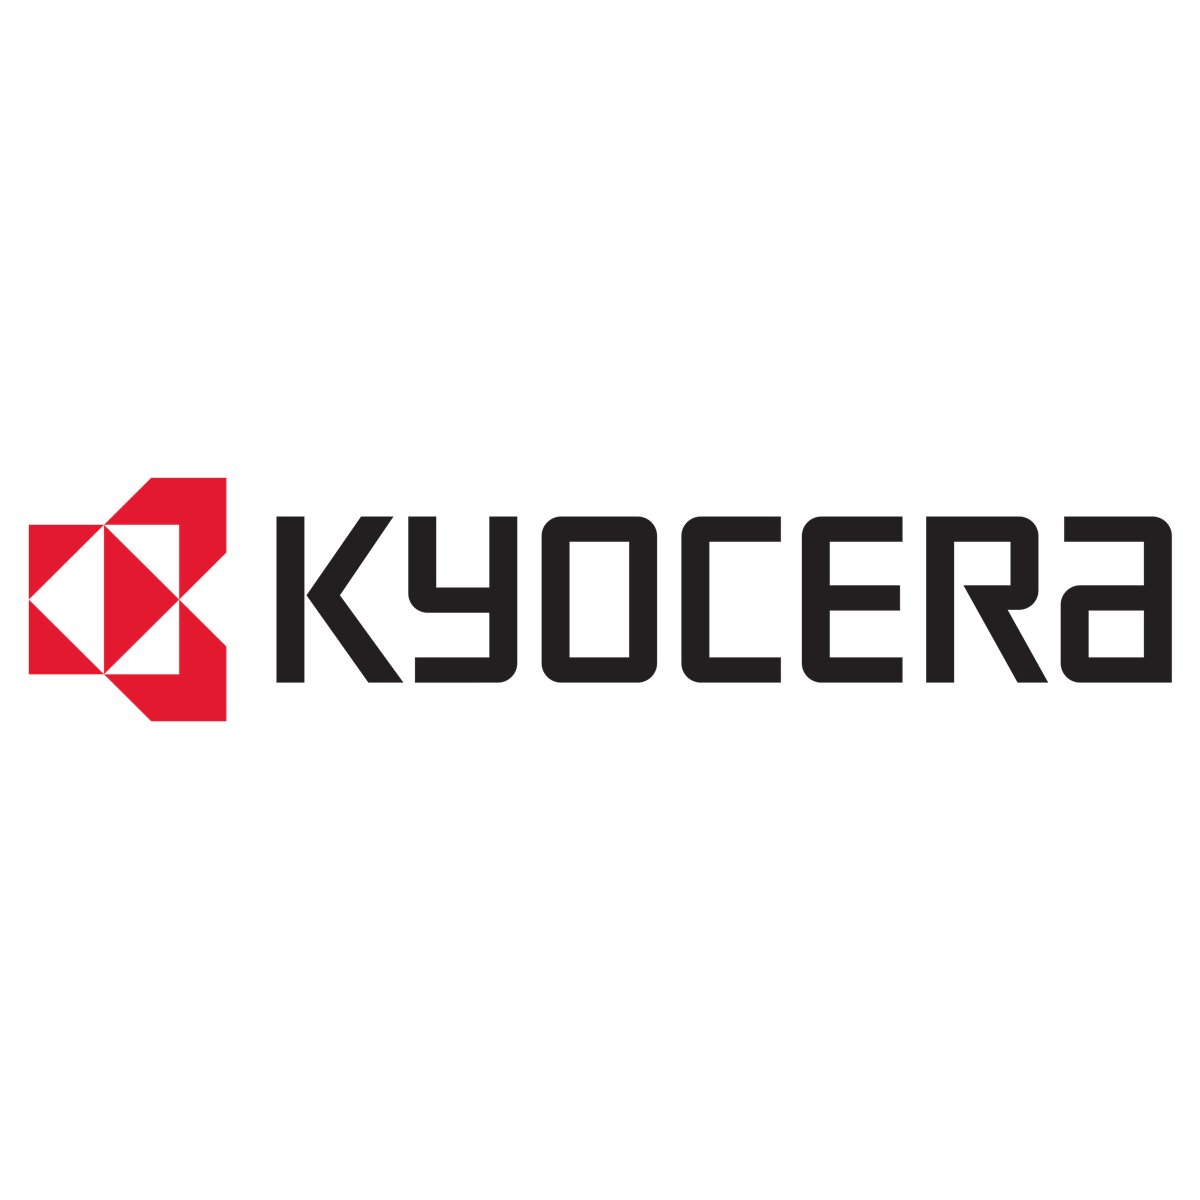 Kyocera KYOeasyprint 3 - 15x Geräte-Lizenzen